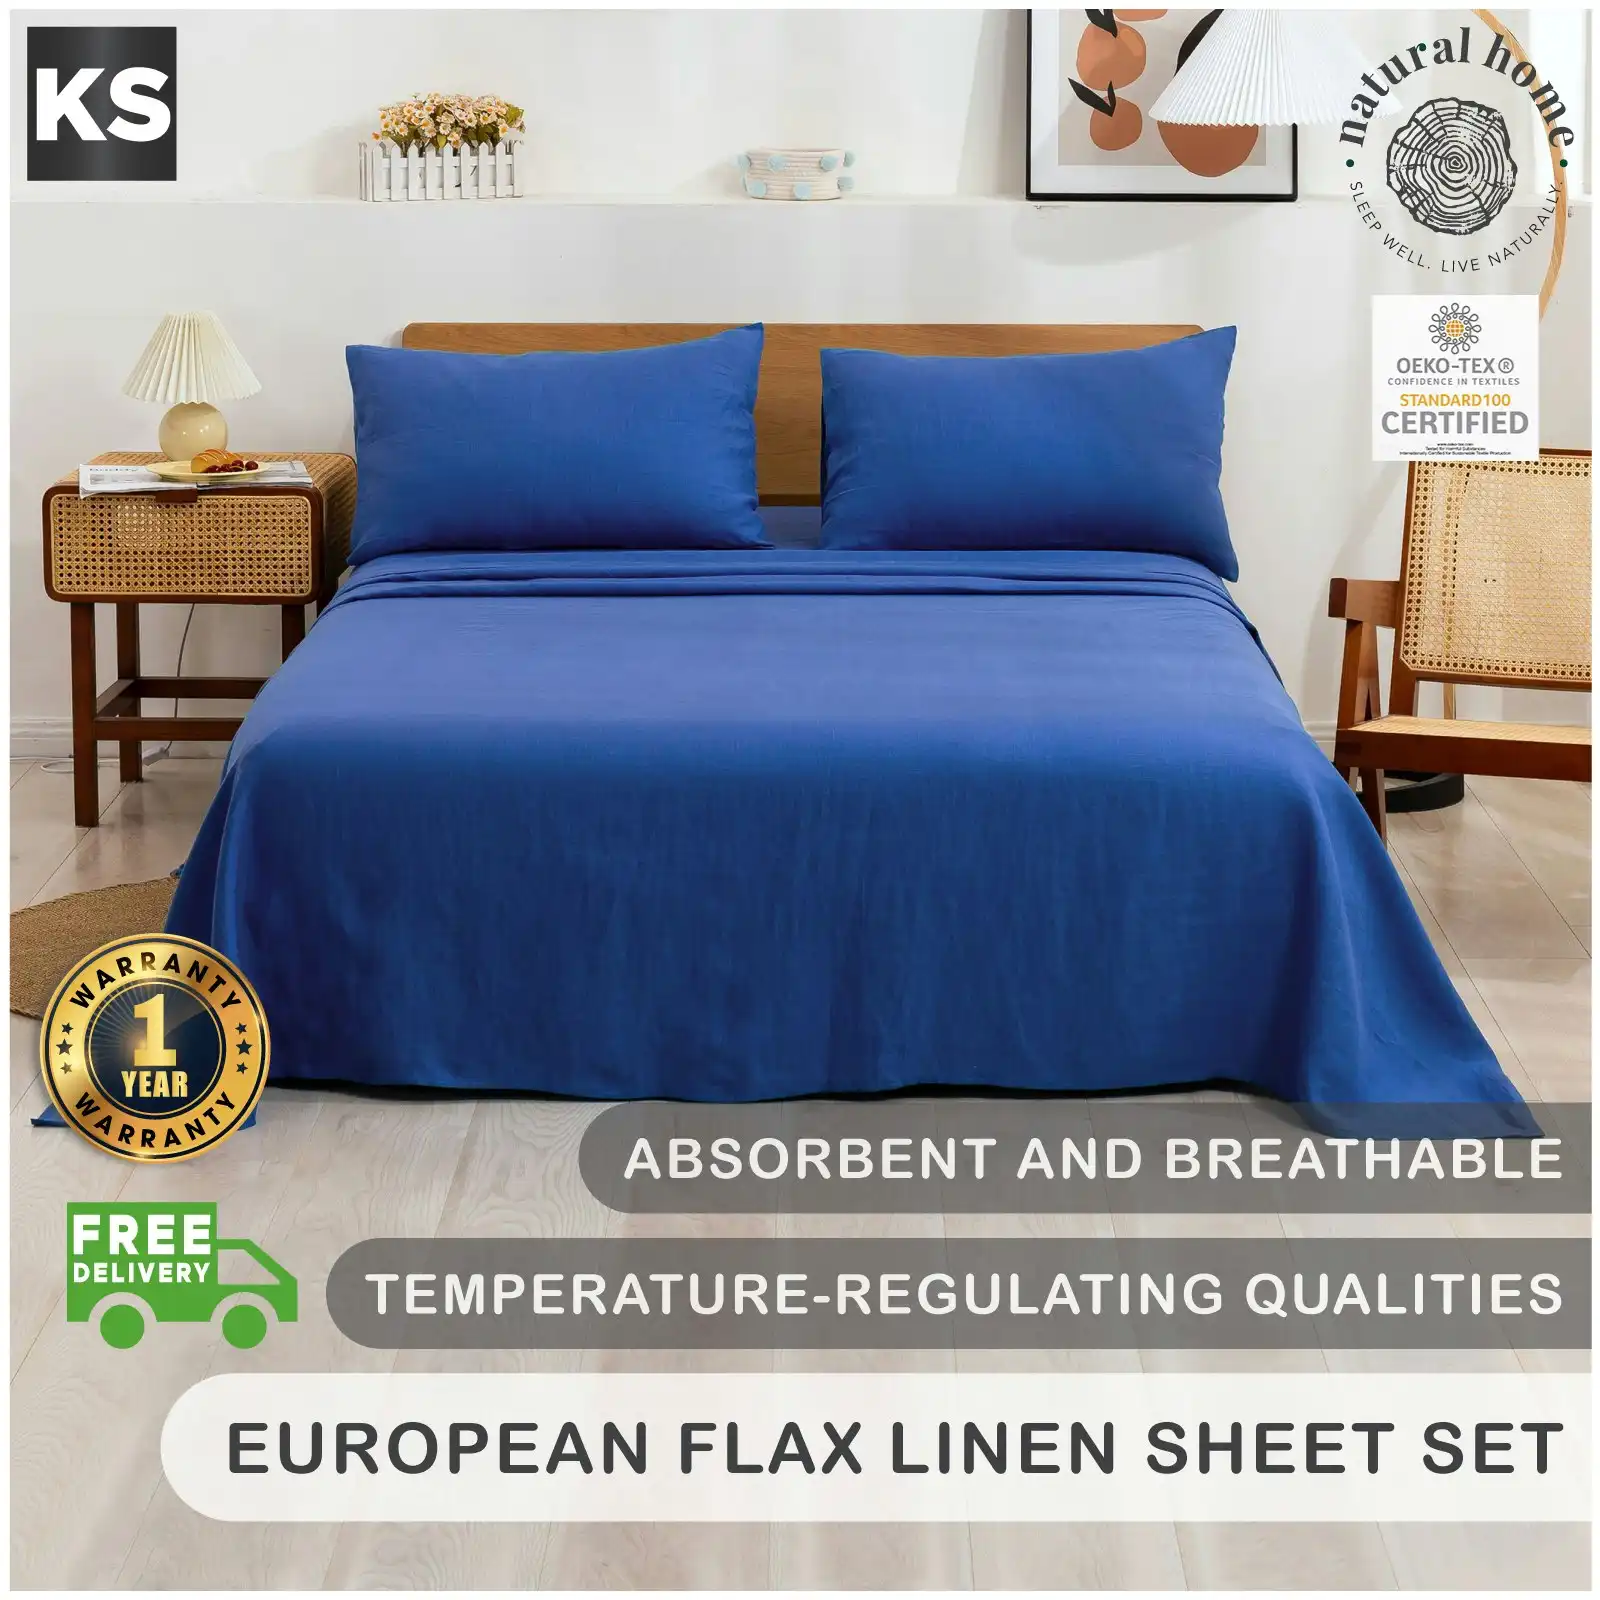 Natural Home 100% European Flax Linen Sheet Set - Deep Blue - King Single Bed